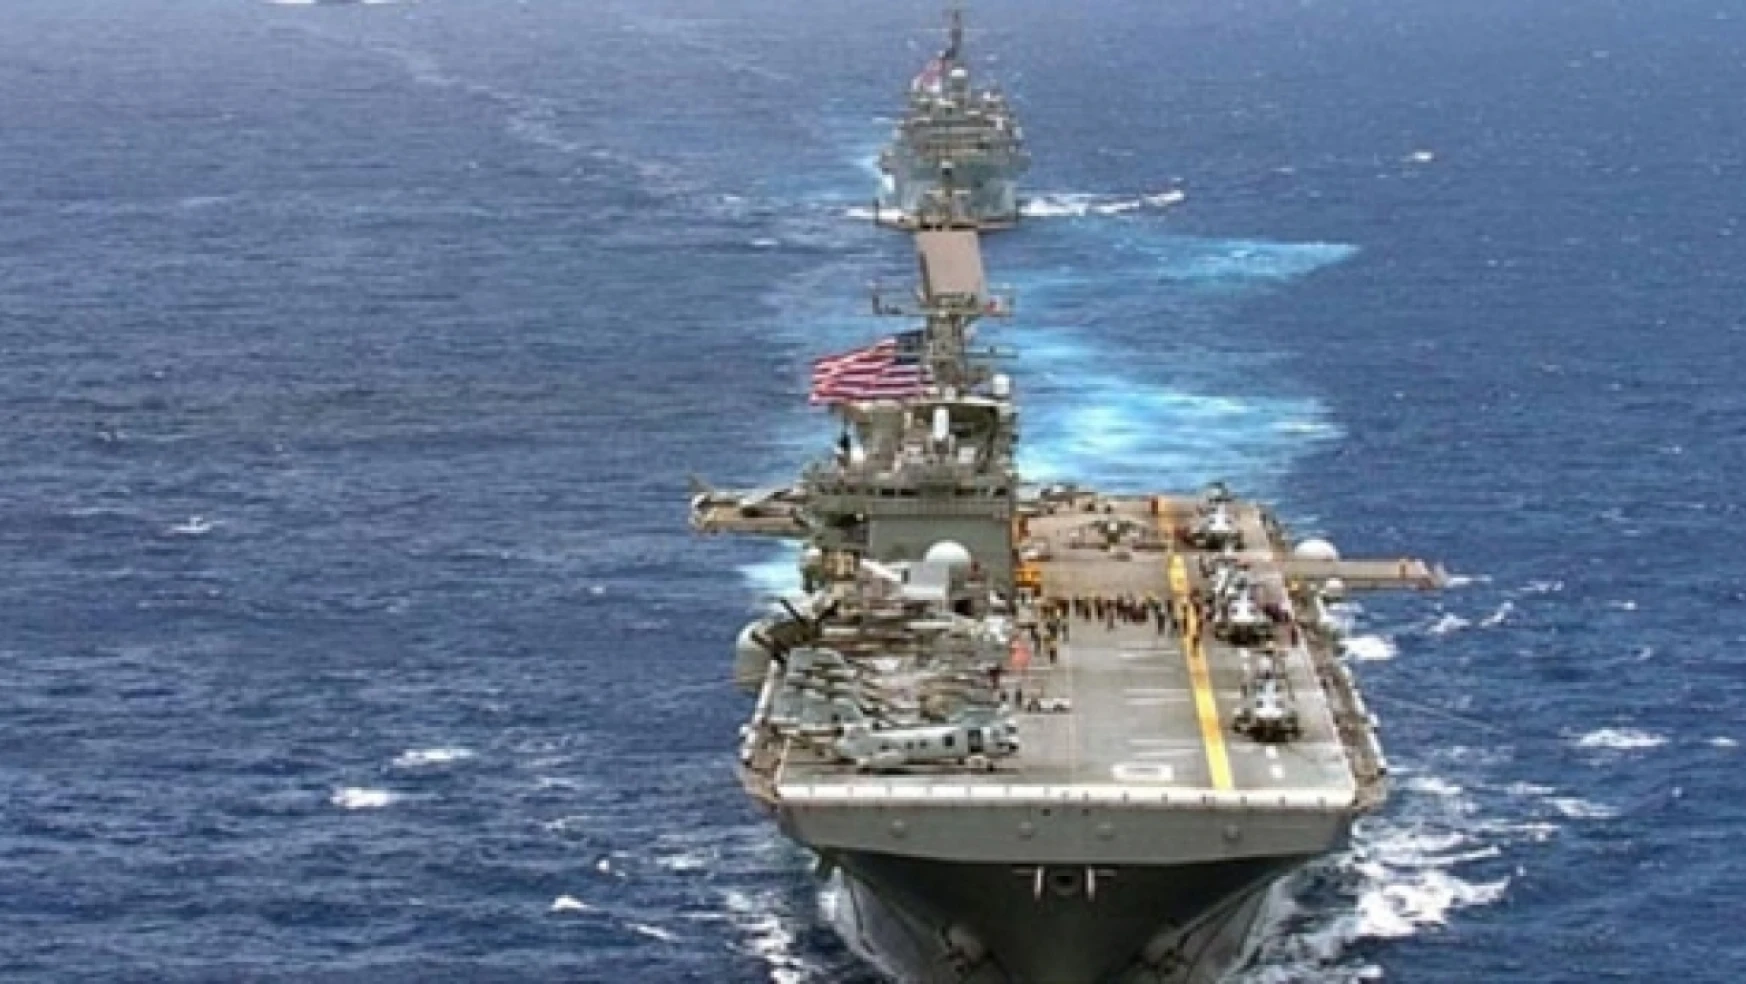 Dışişleri Bakanlığından KKTC'nin ABD gemisi açıklamasına destek